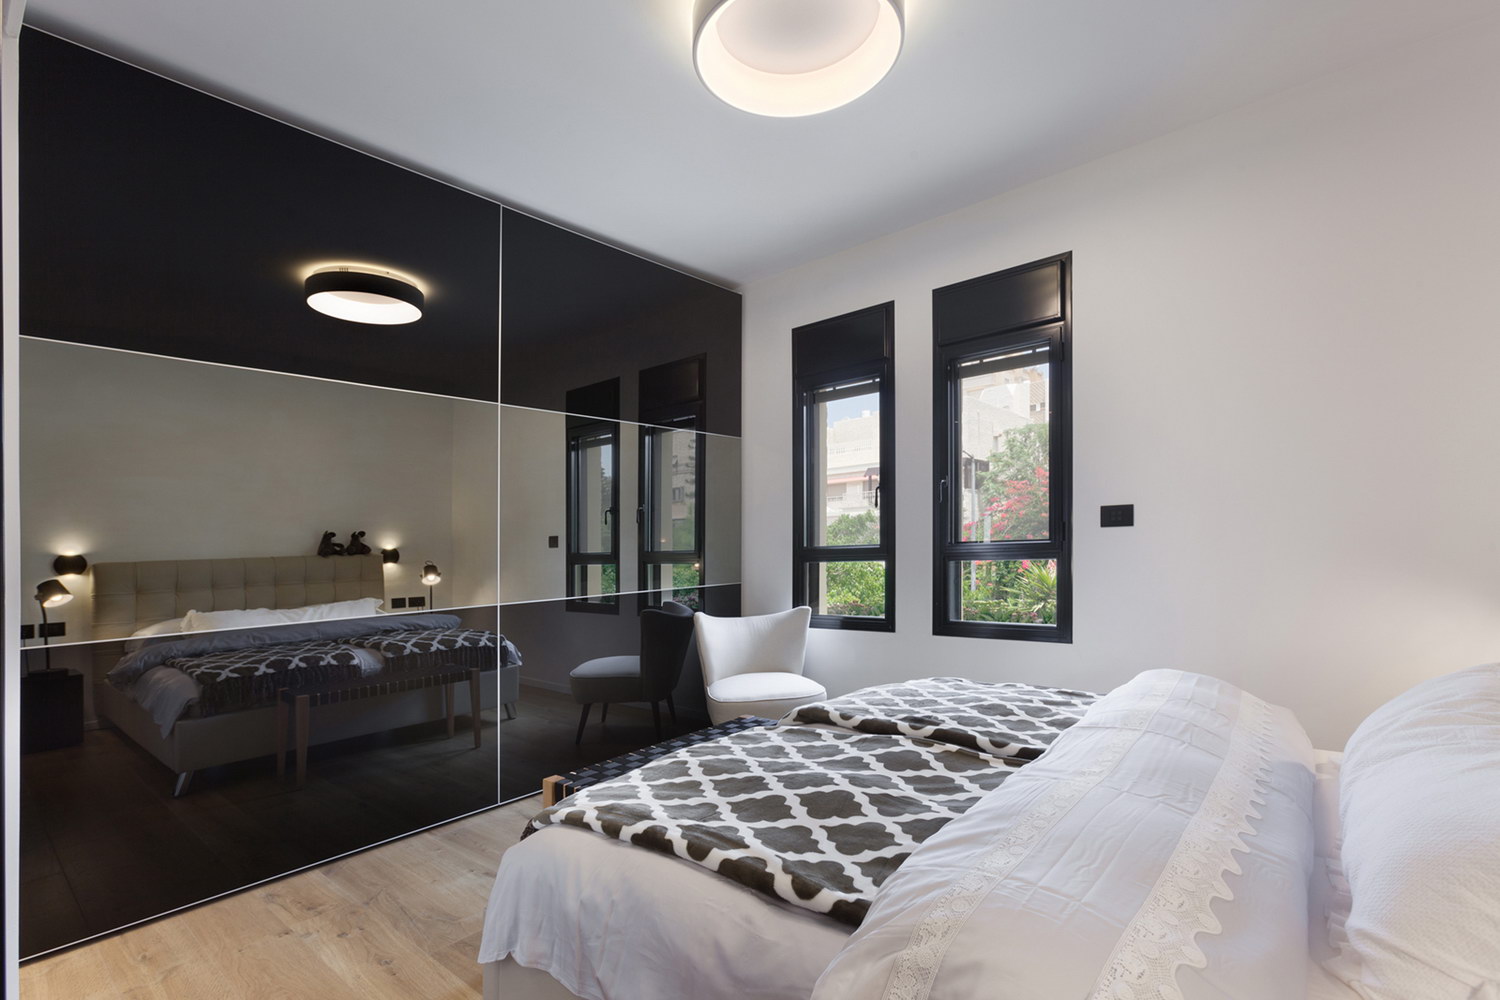 השתקפות של מיטה זוגית מארון זכוכית בצבע שחור